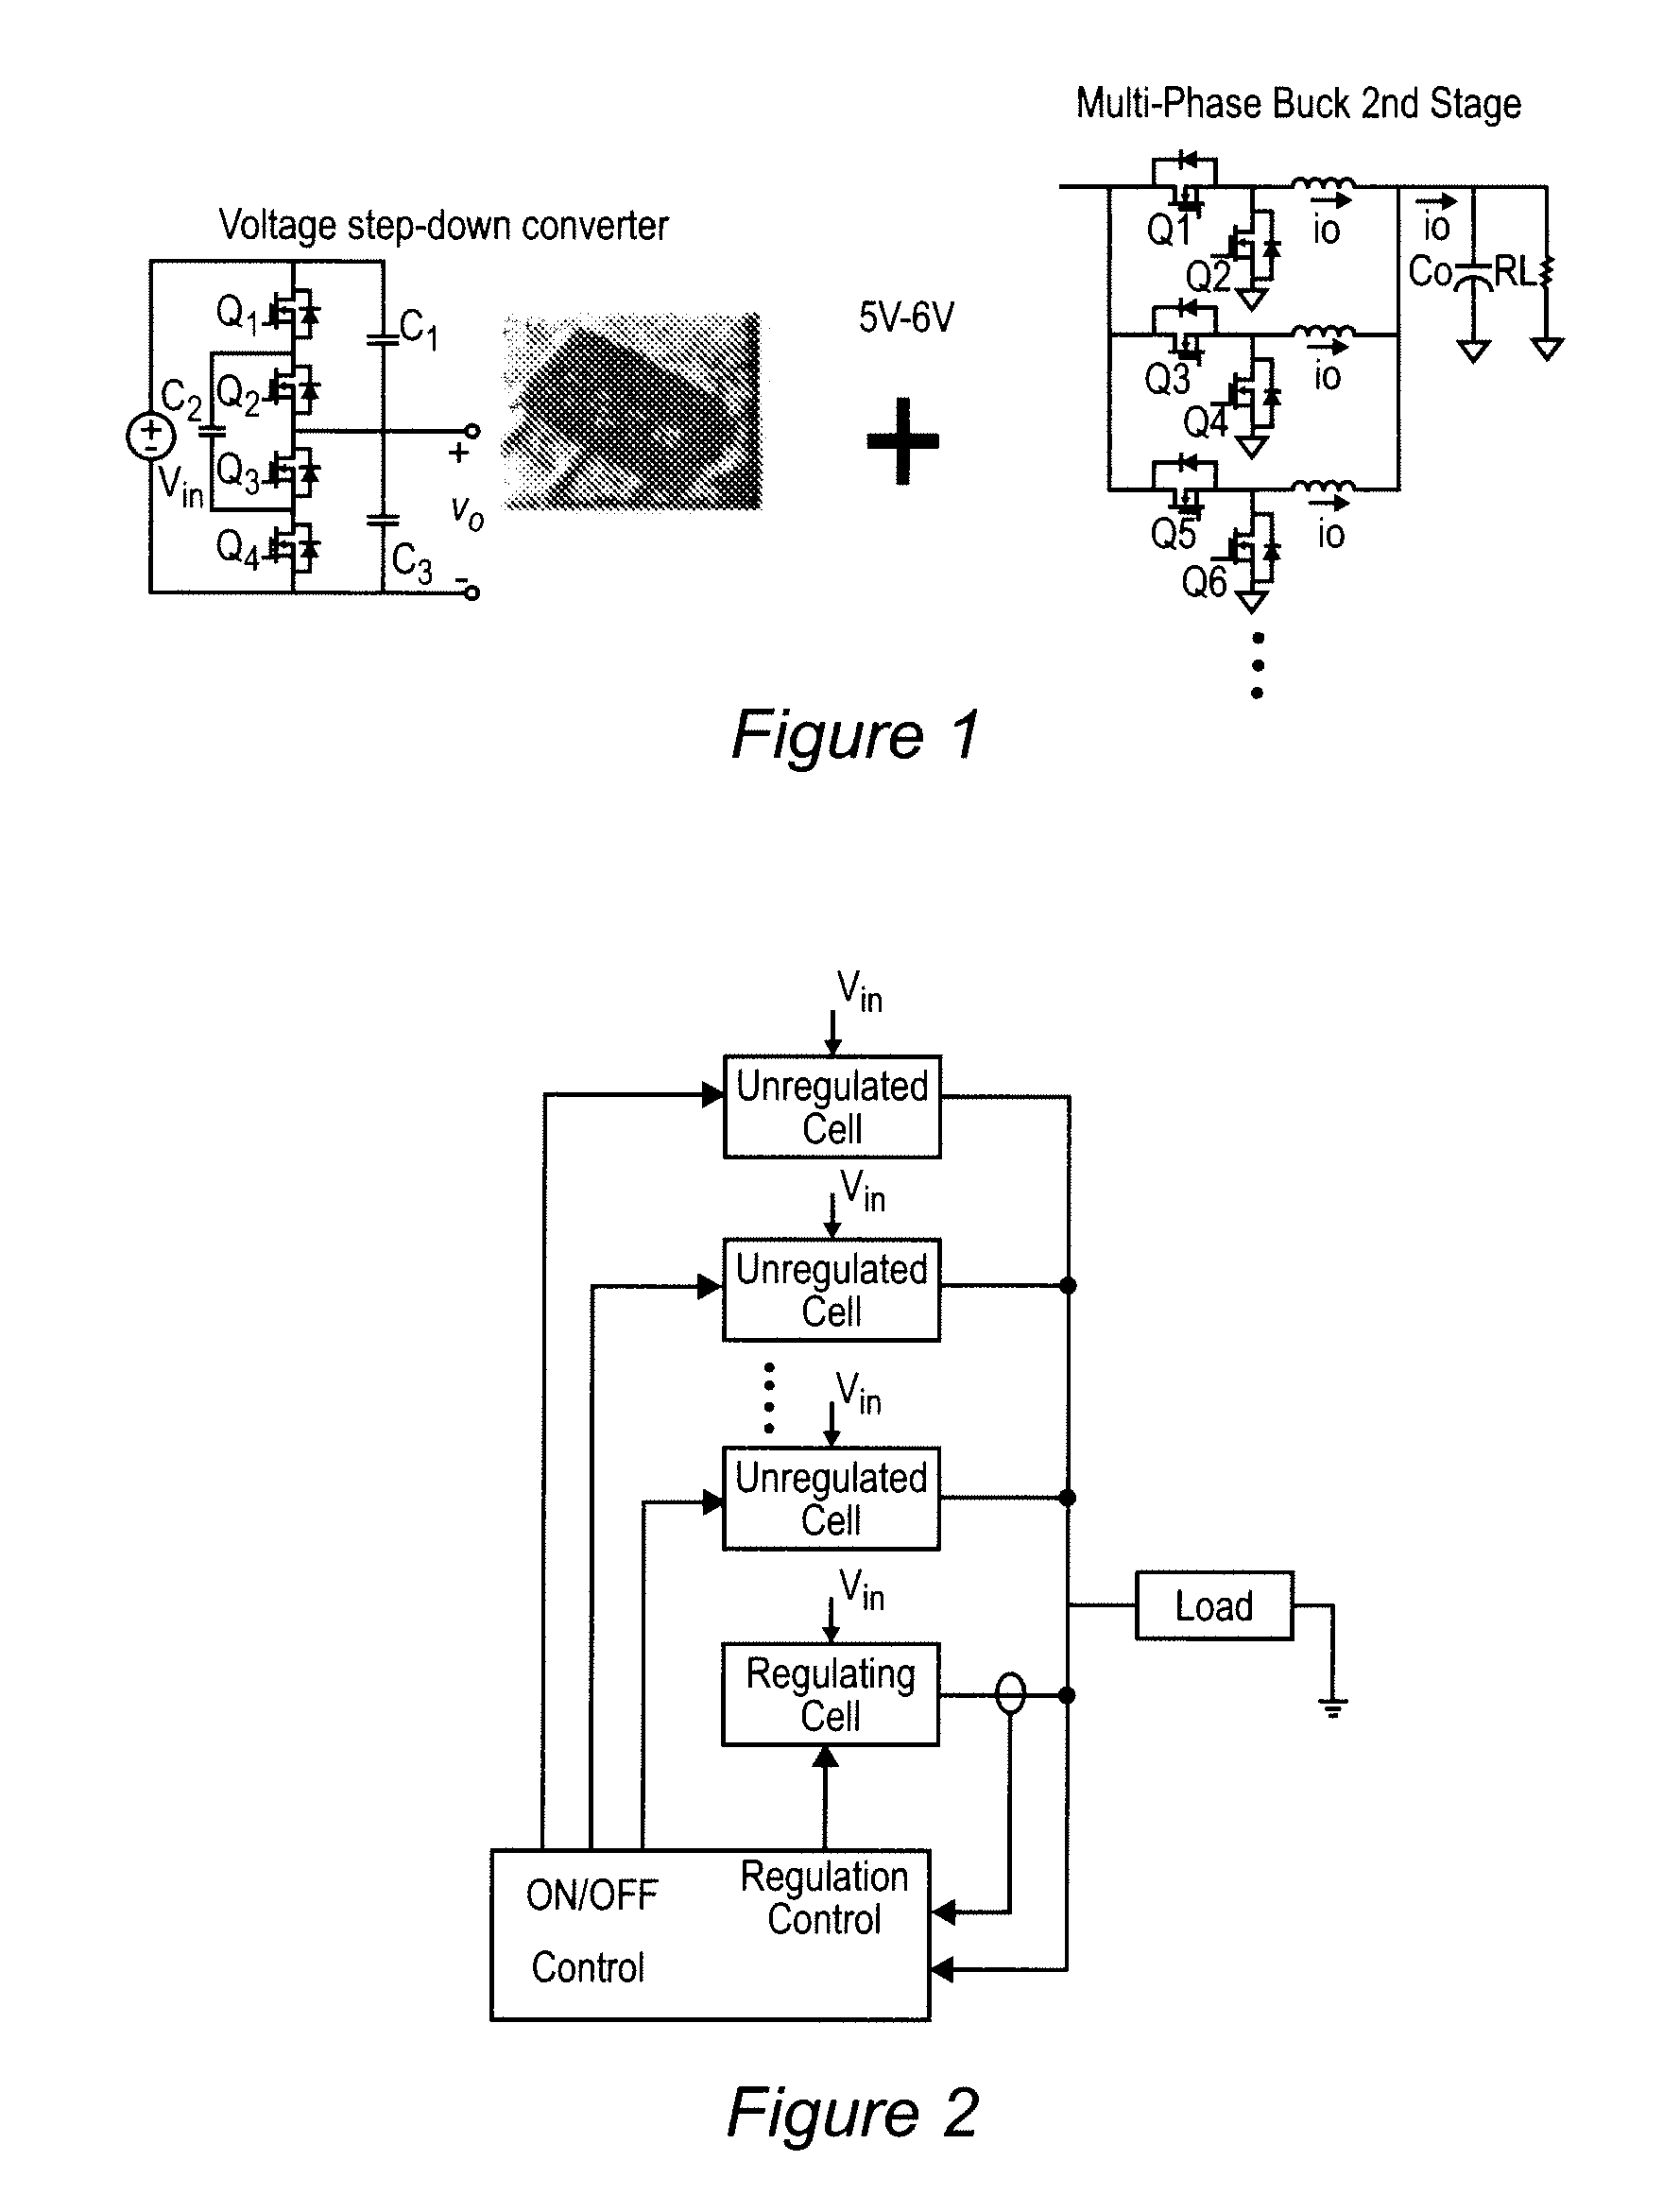 Quasi-parallel voltage regulator